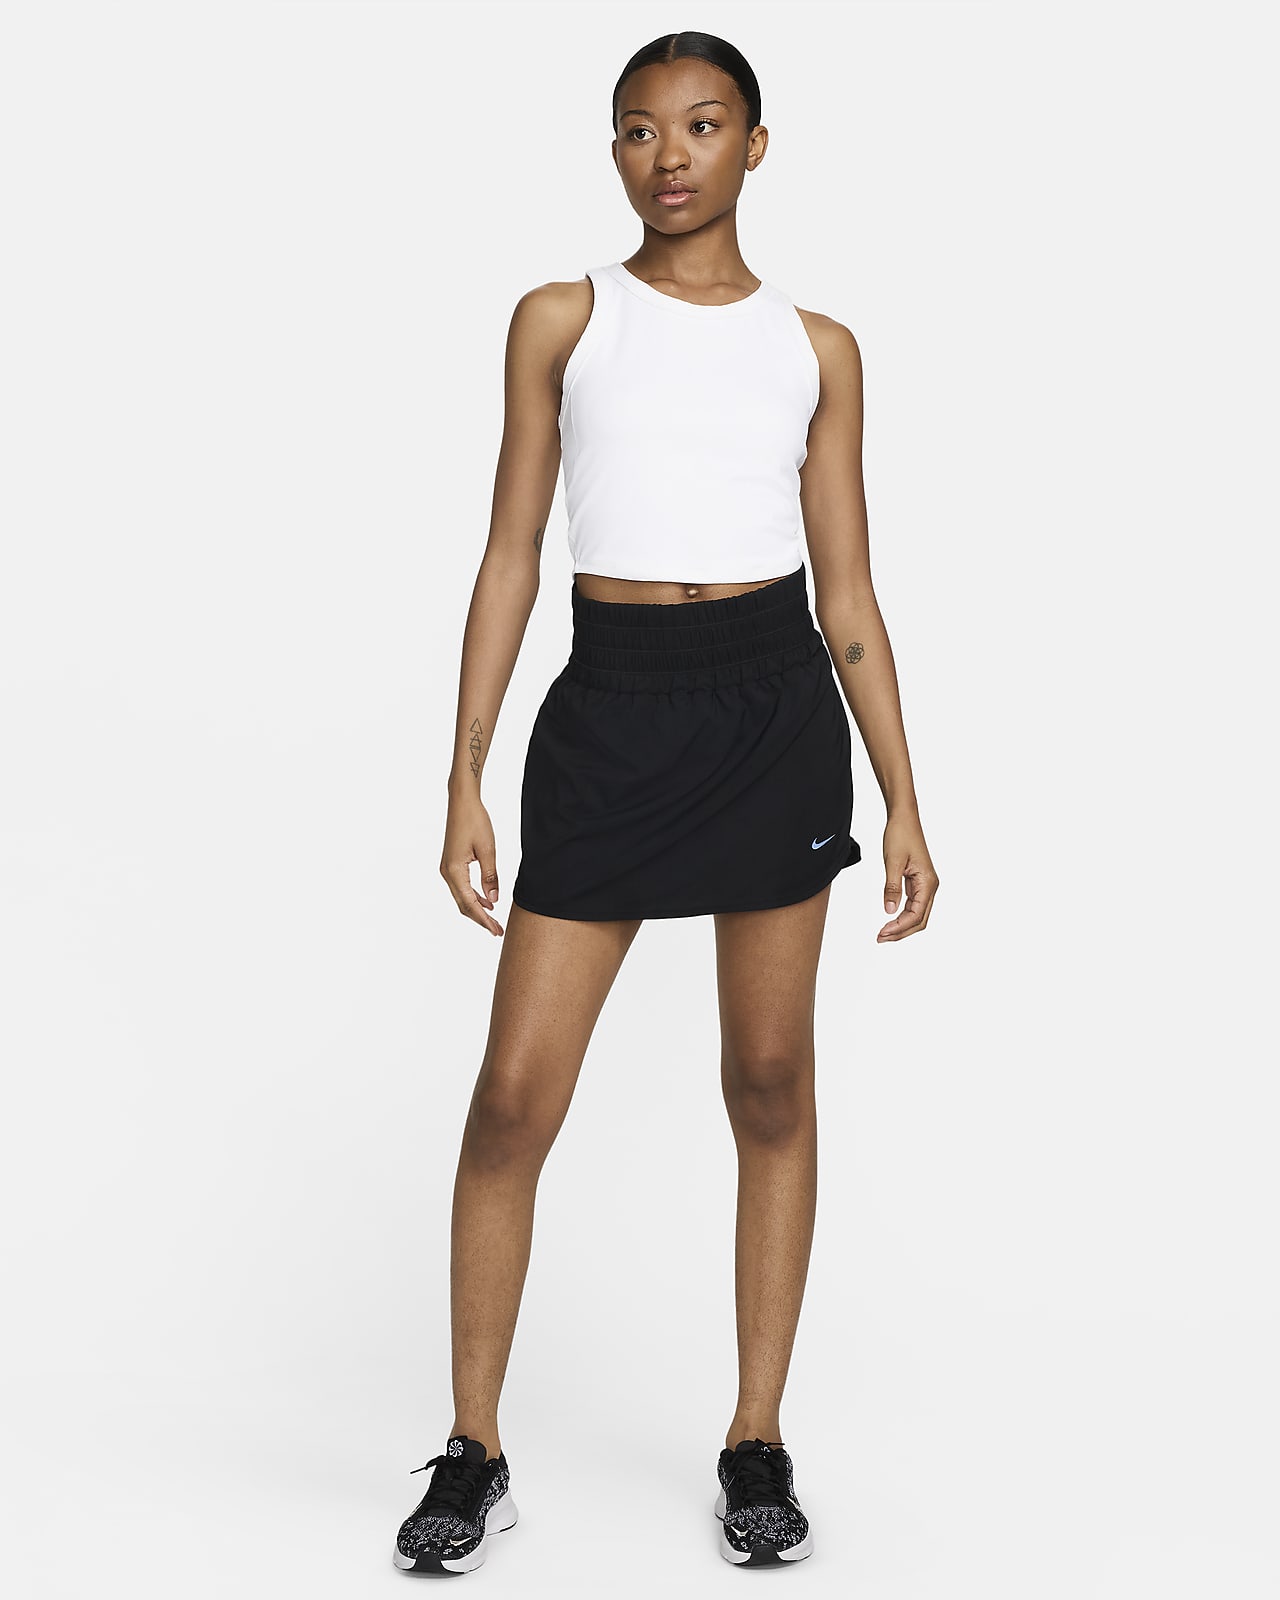 Nike Dri-FIT One Women's Slim Fit Tank. Nike LU